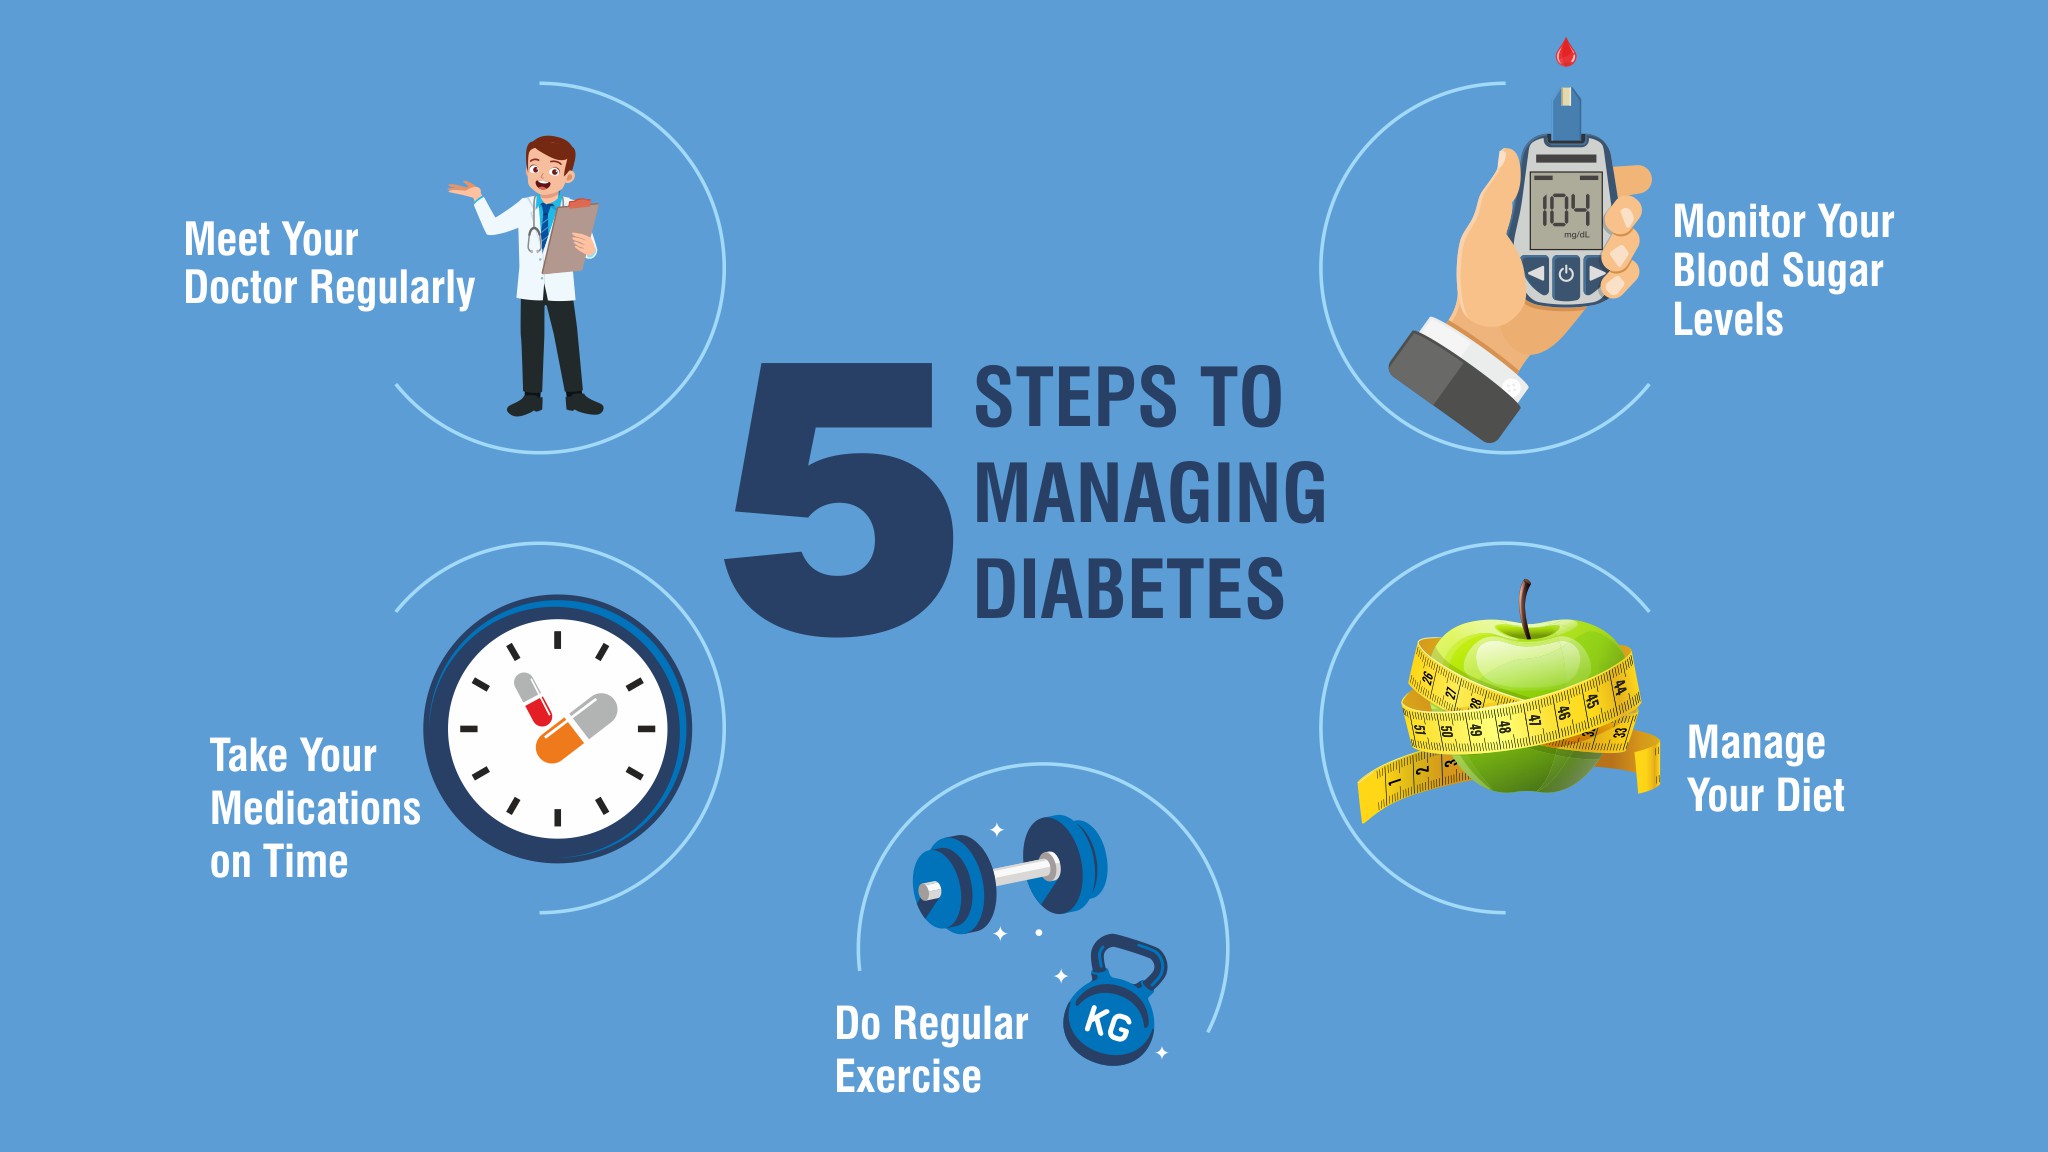 Diabetes management tips